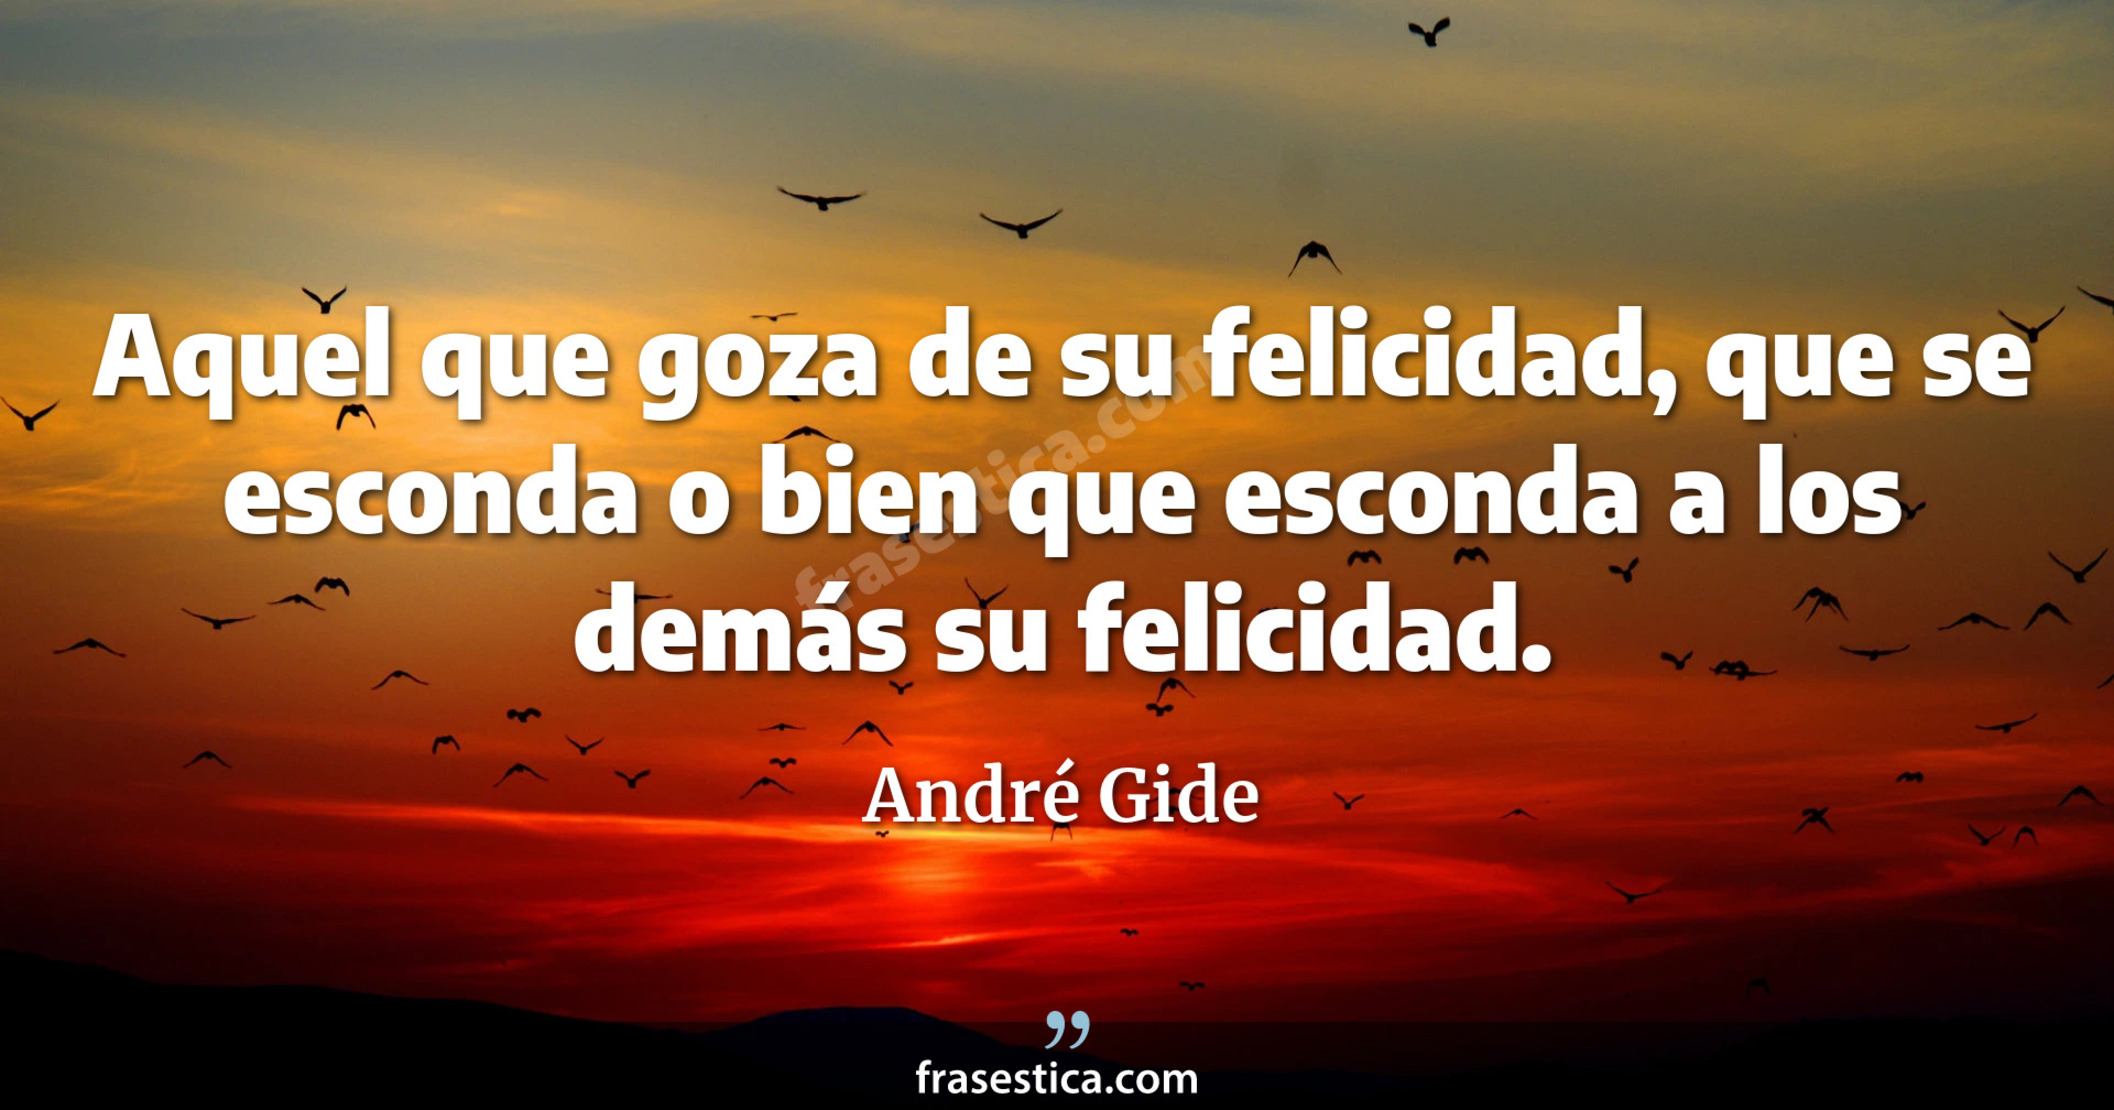 Aquel que goza de su felicidad, que se esconda o bien que esconda a los demás su felicidad. - André Gide